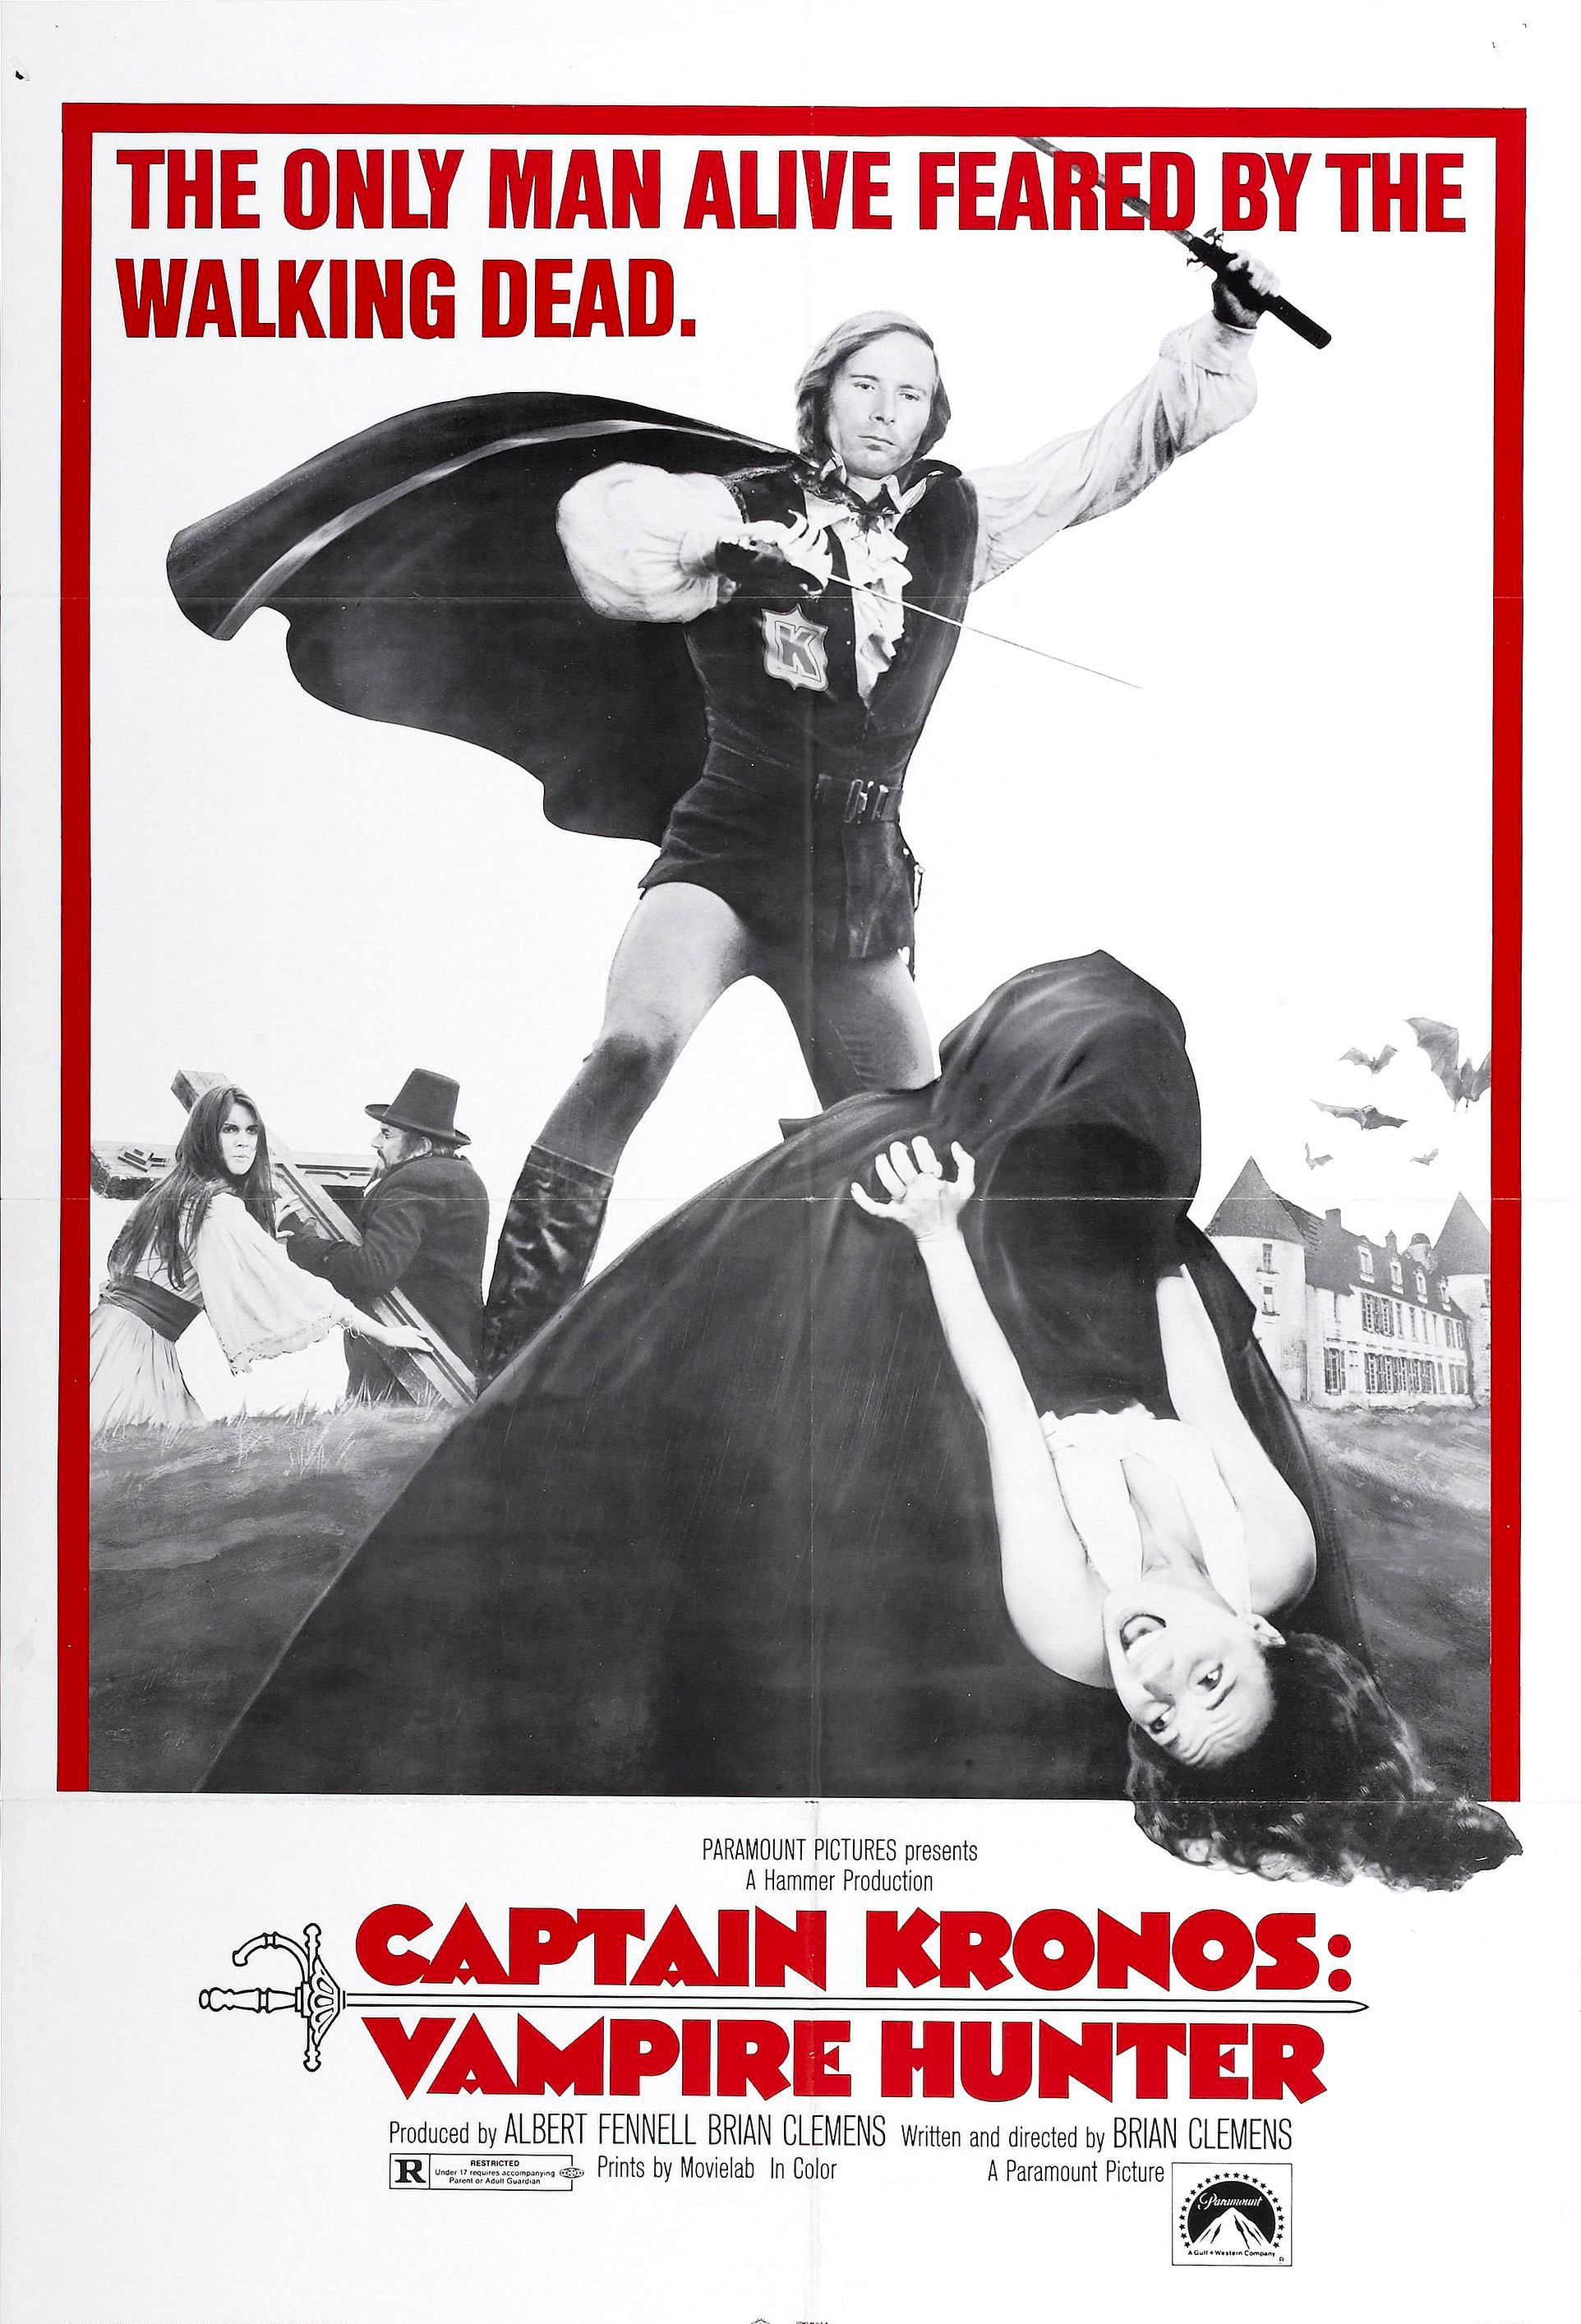 Nonton film Captain Kronos – Vampire Hunter layarkaca21 indoxx1 ganool online streaming terbaru